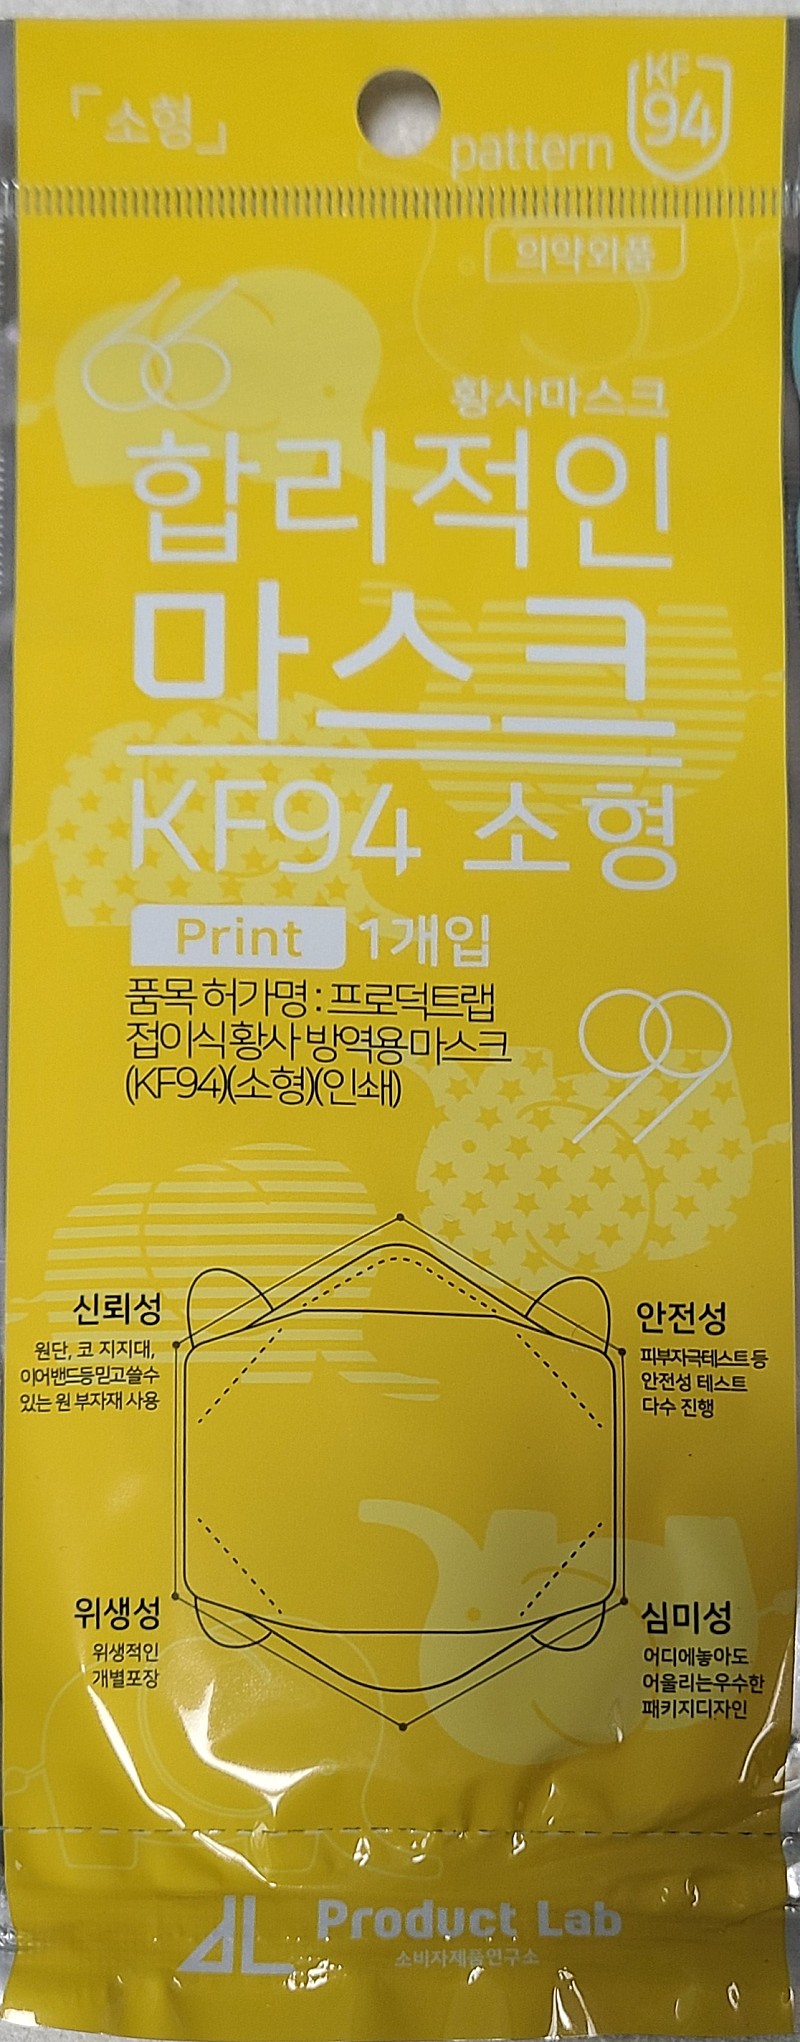 (가격조정)유한킴벌리,크로덕트랩 Product lab 소형 어린이마스크 10,000원